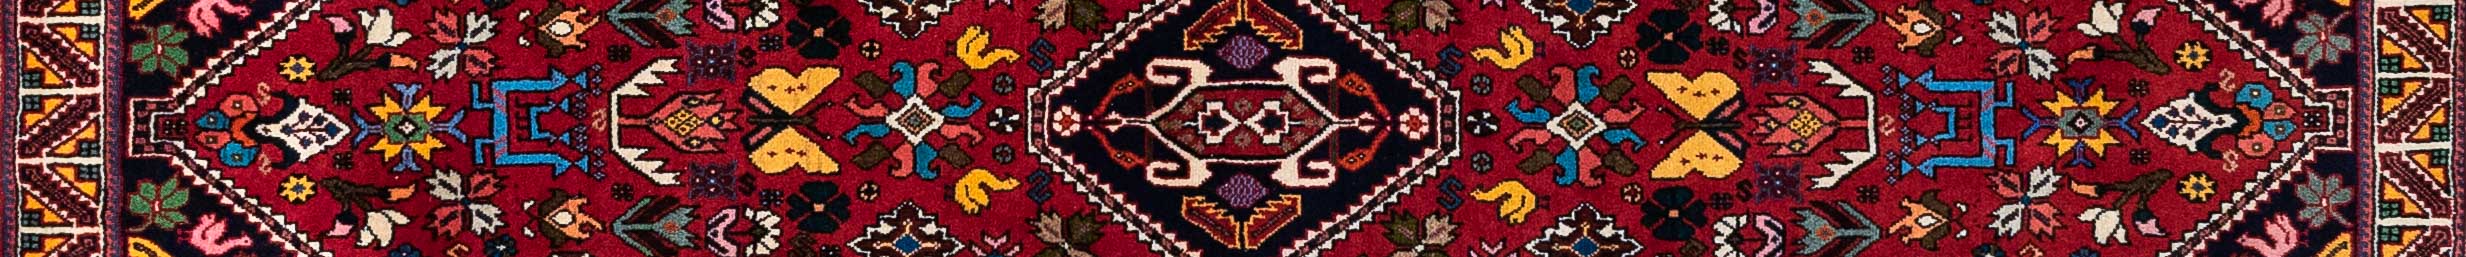 Abadeh Persian Carpet Rug N1Carpet Canada Montreal Tapis Persan 1100